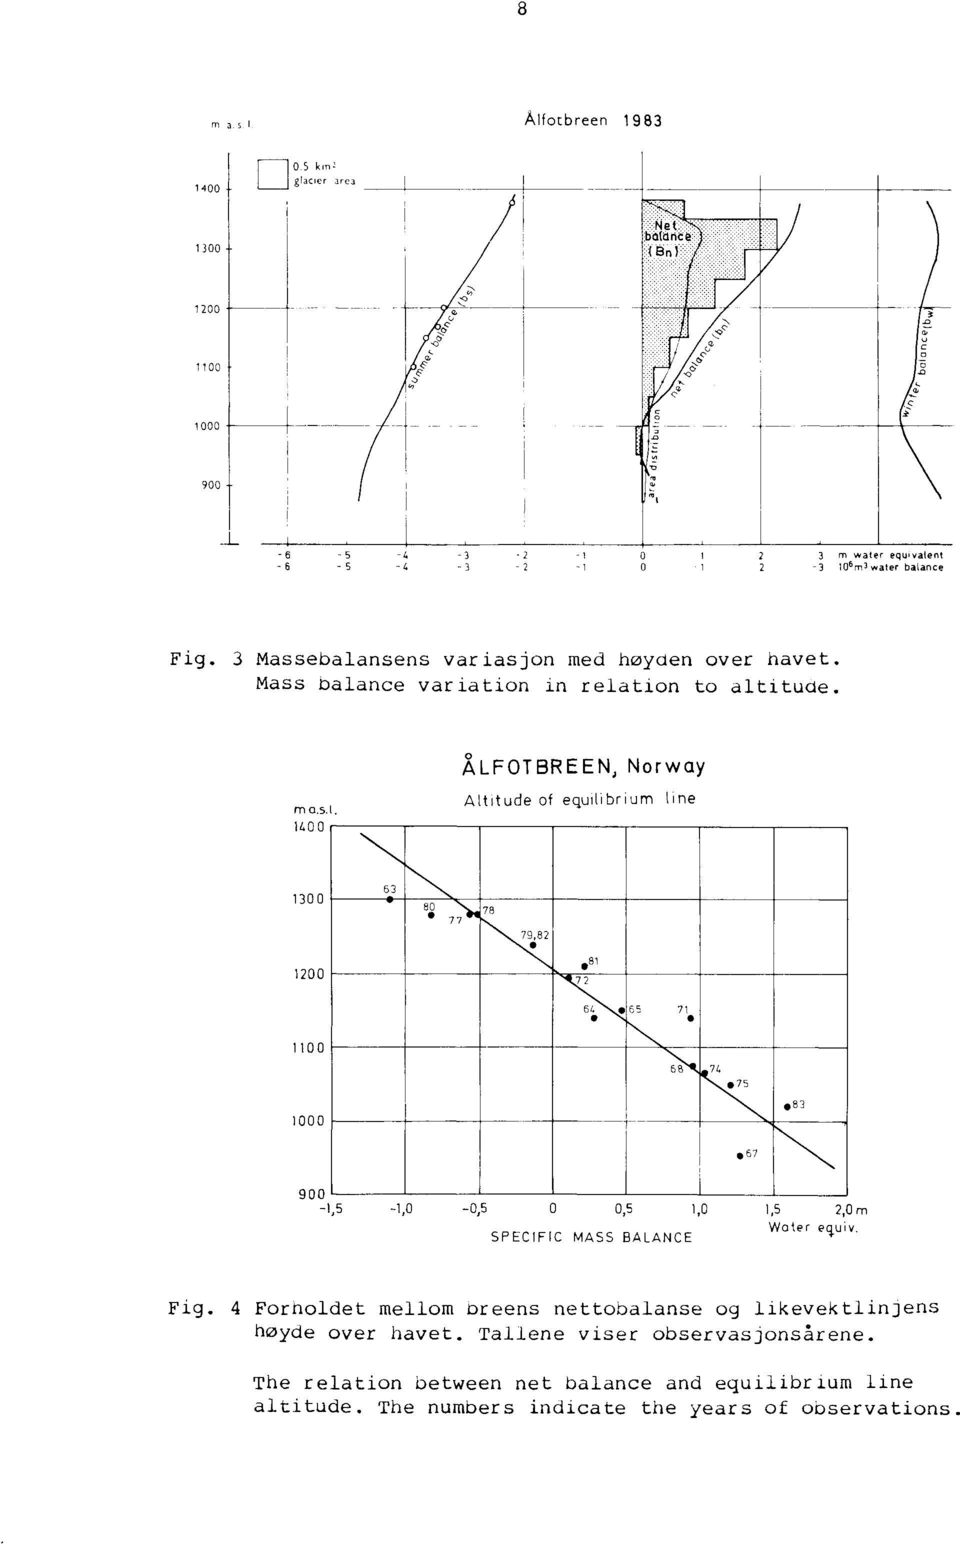 SPECIFIC MASS BALANCE Fig. 4 Forholdet mellom breens nettobalanse og likevektlinjens høyde over havet. Tallene viser observasjonsårene.